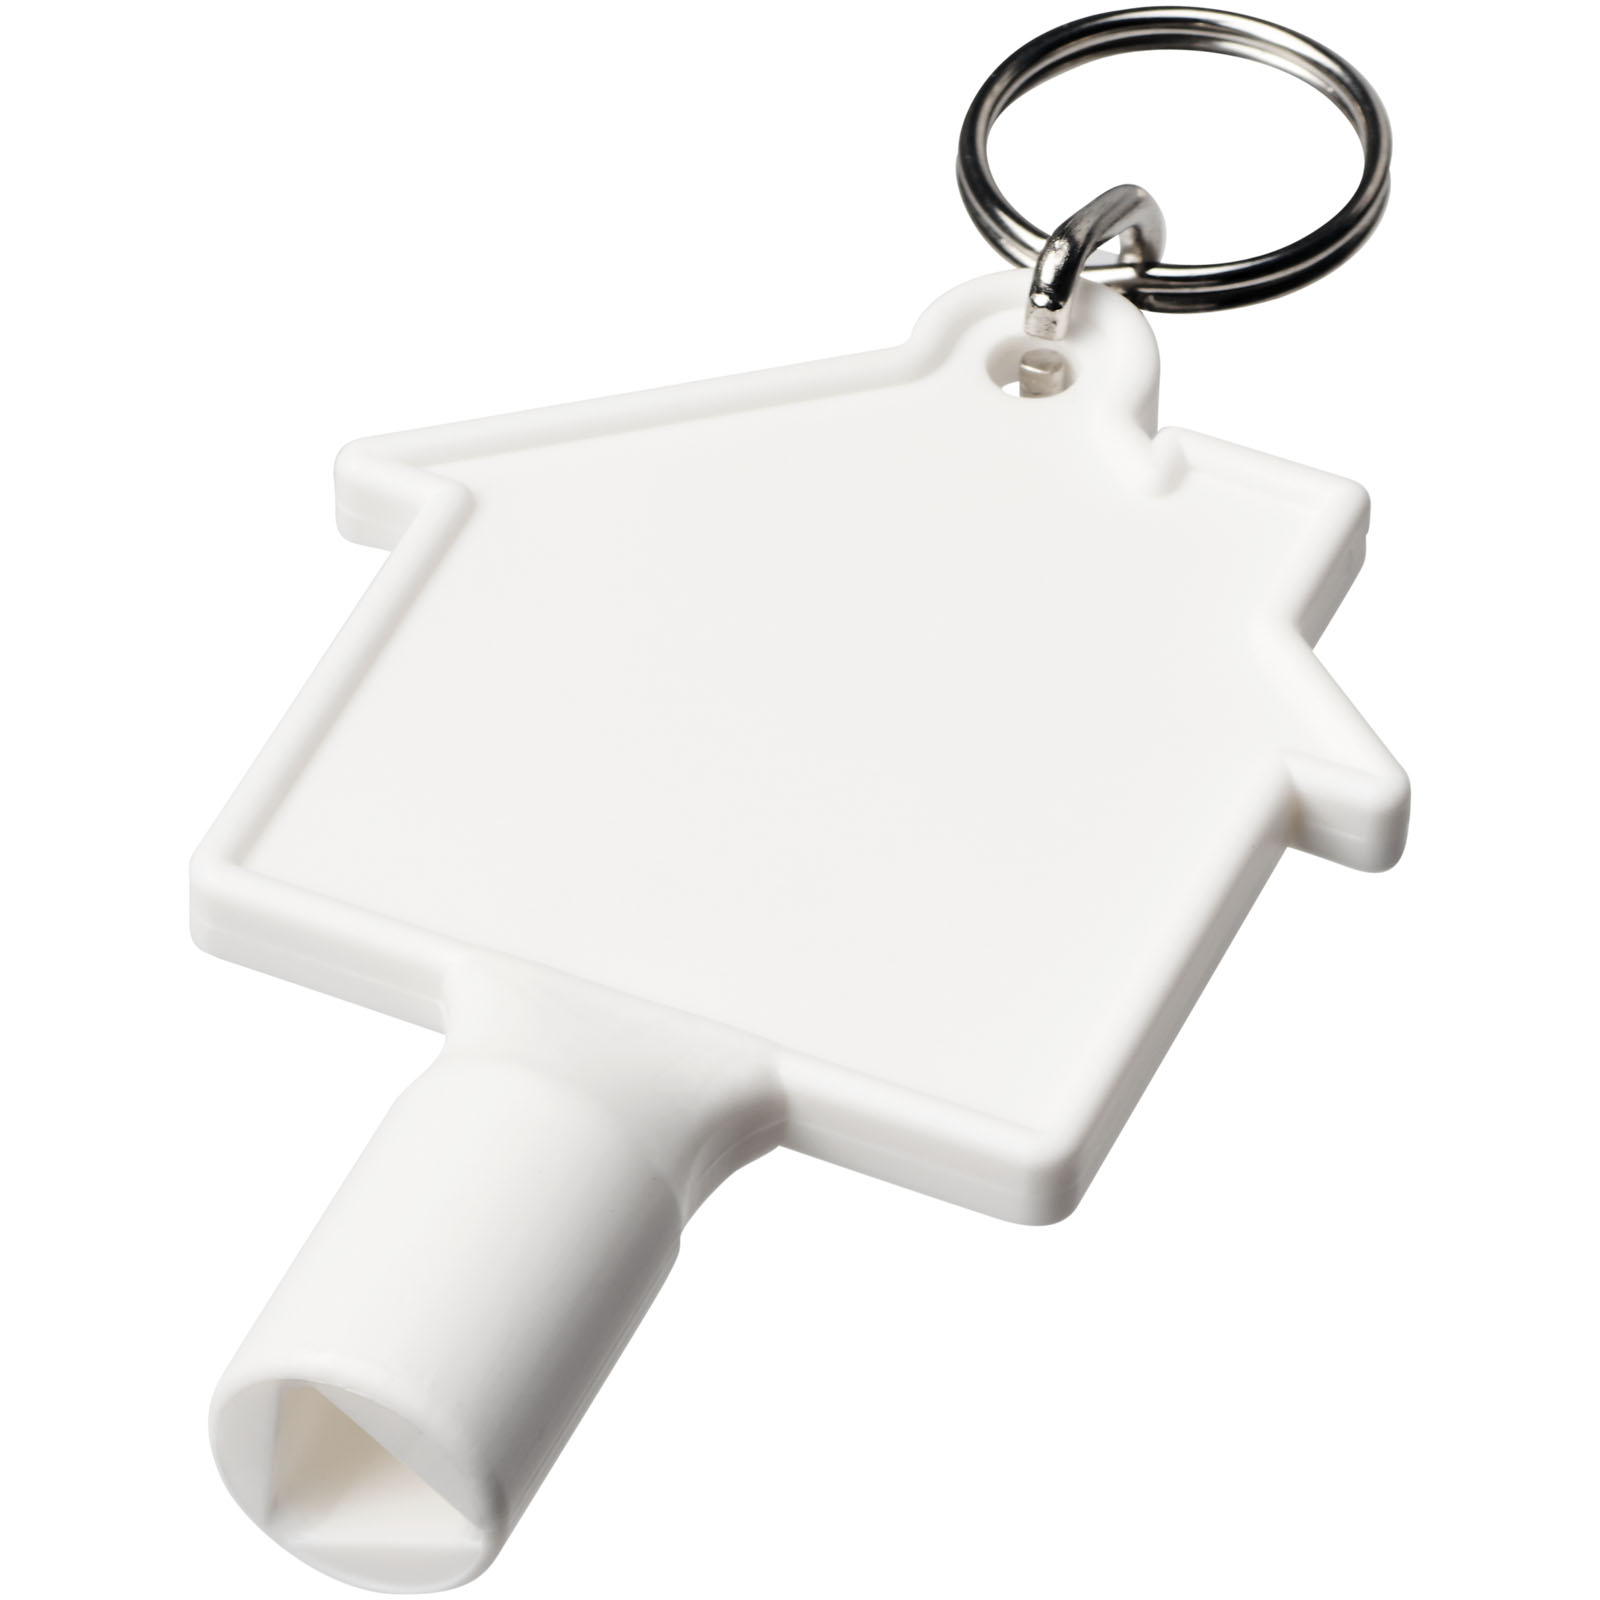 Porte-clés publicitaires - Porte-clés Maximilian pour clé utilitaire recyclée en forme de maison